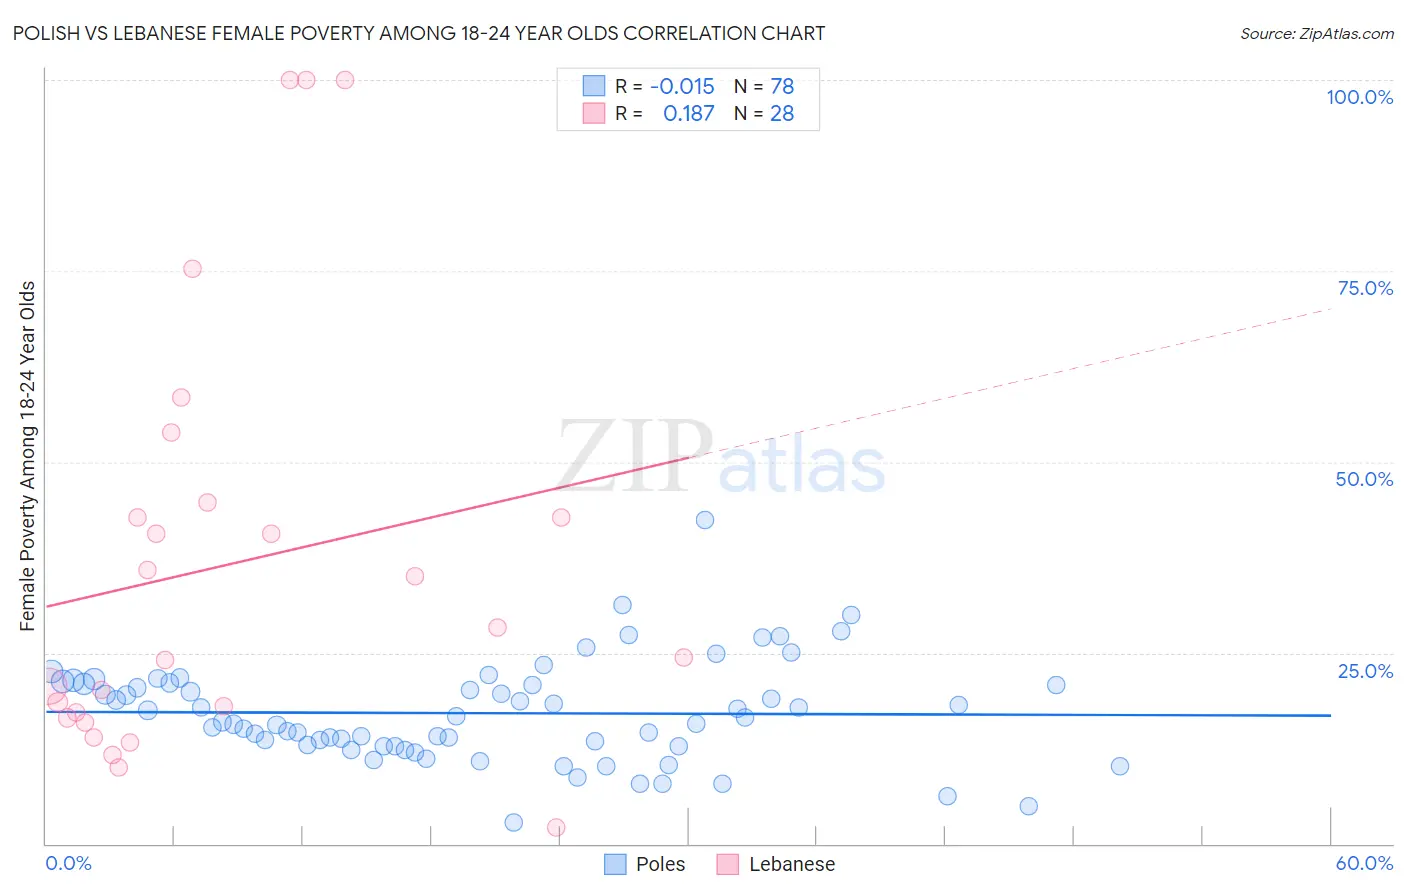 Polish vs Lebanese Female Poverty Among 18-24 Year Olds